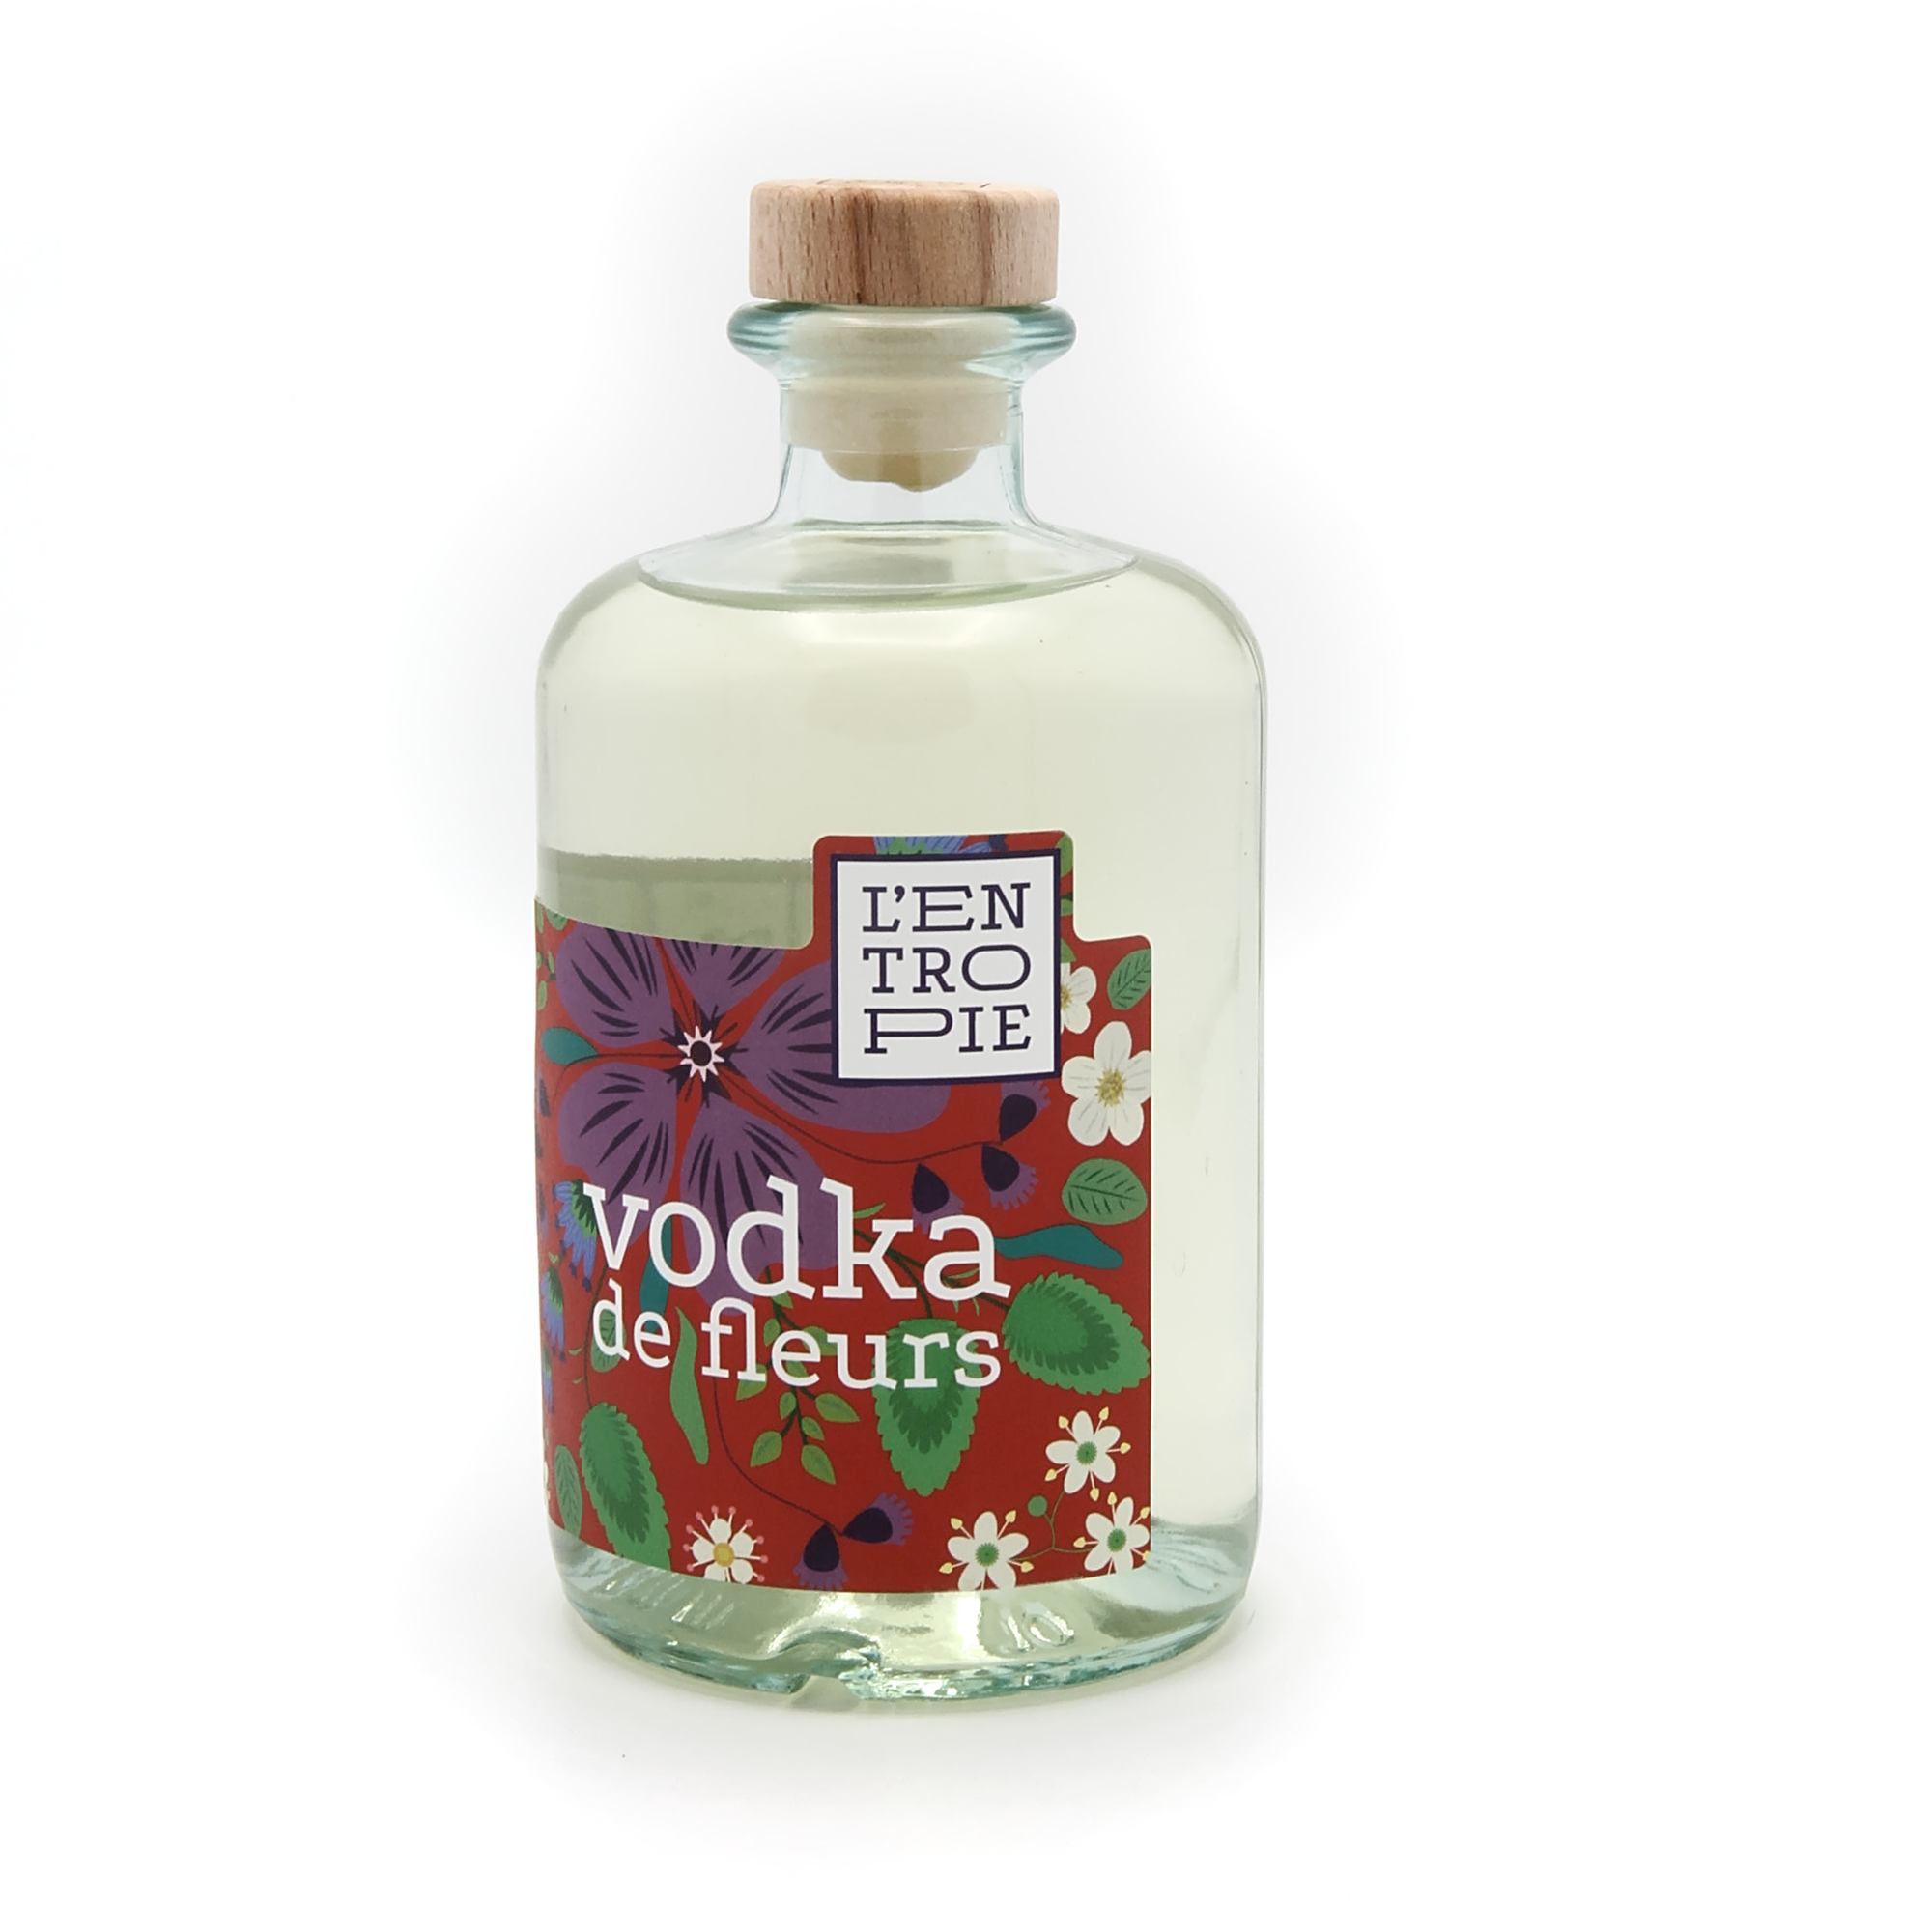 Vodka de fleurs